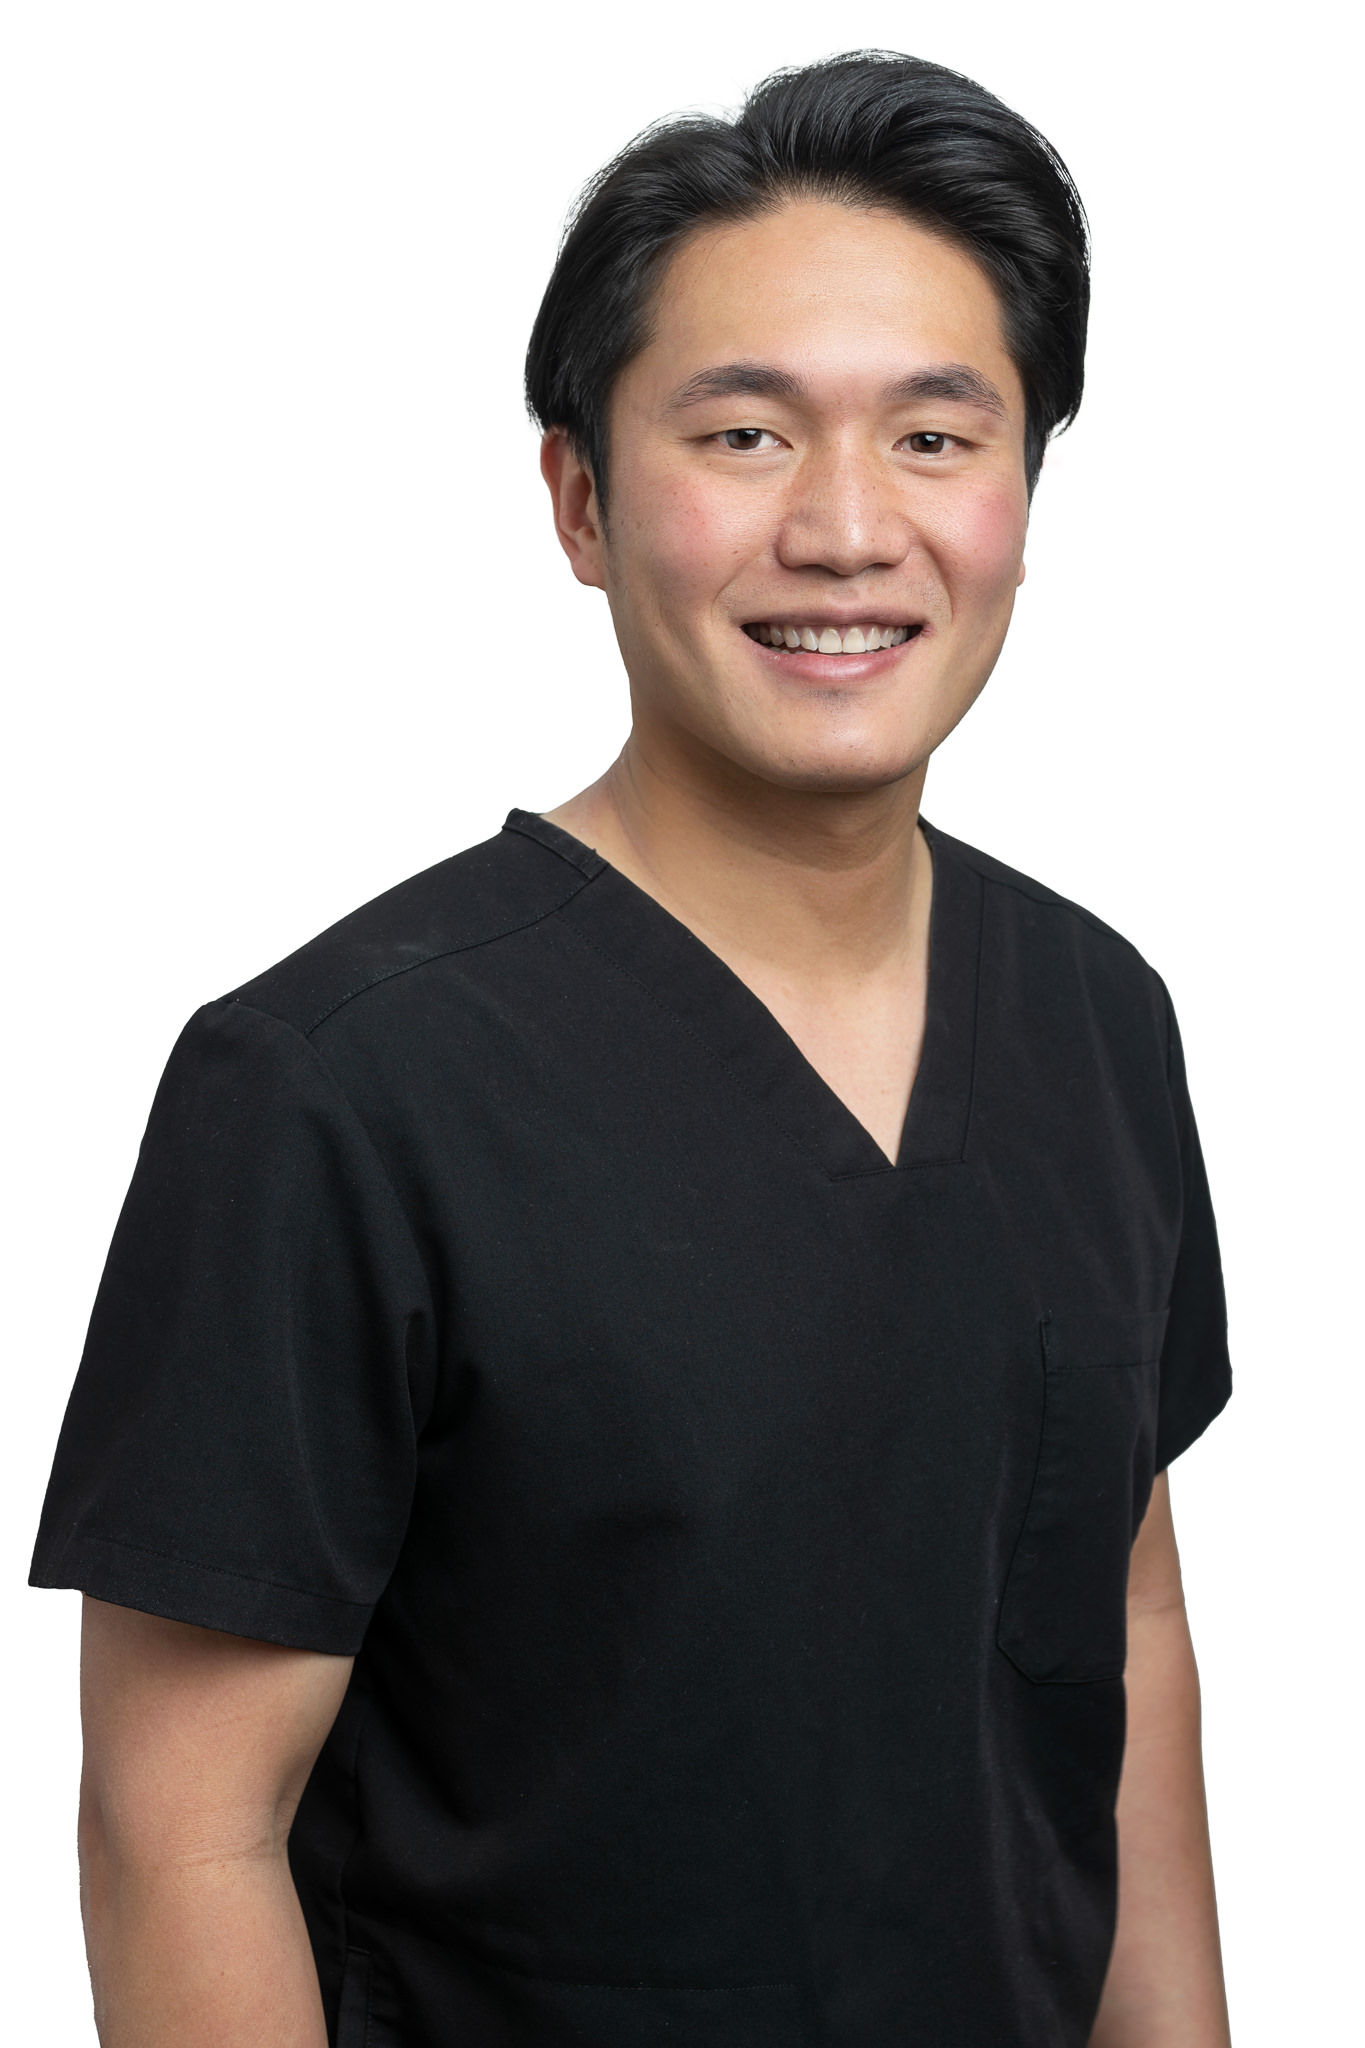 Dr. Adrian Wun